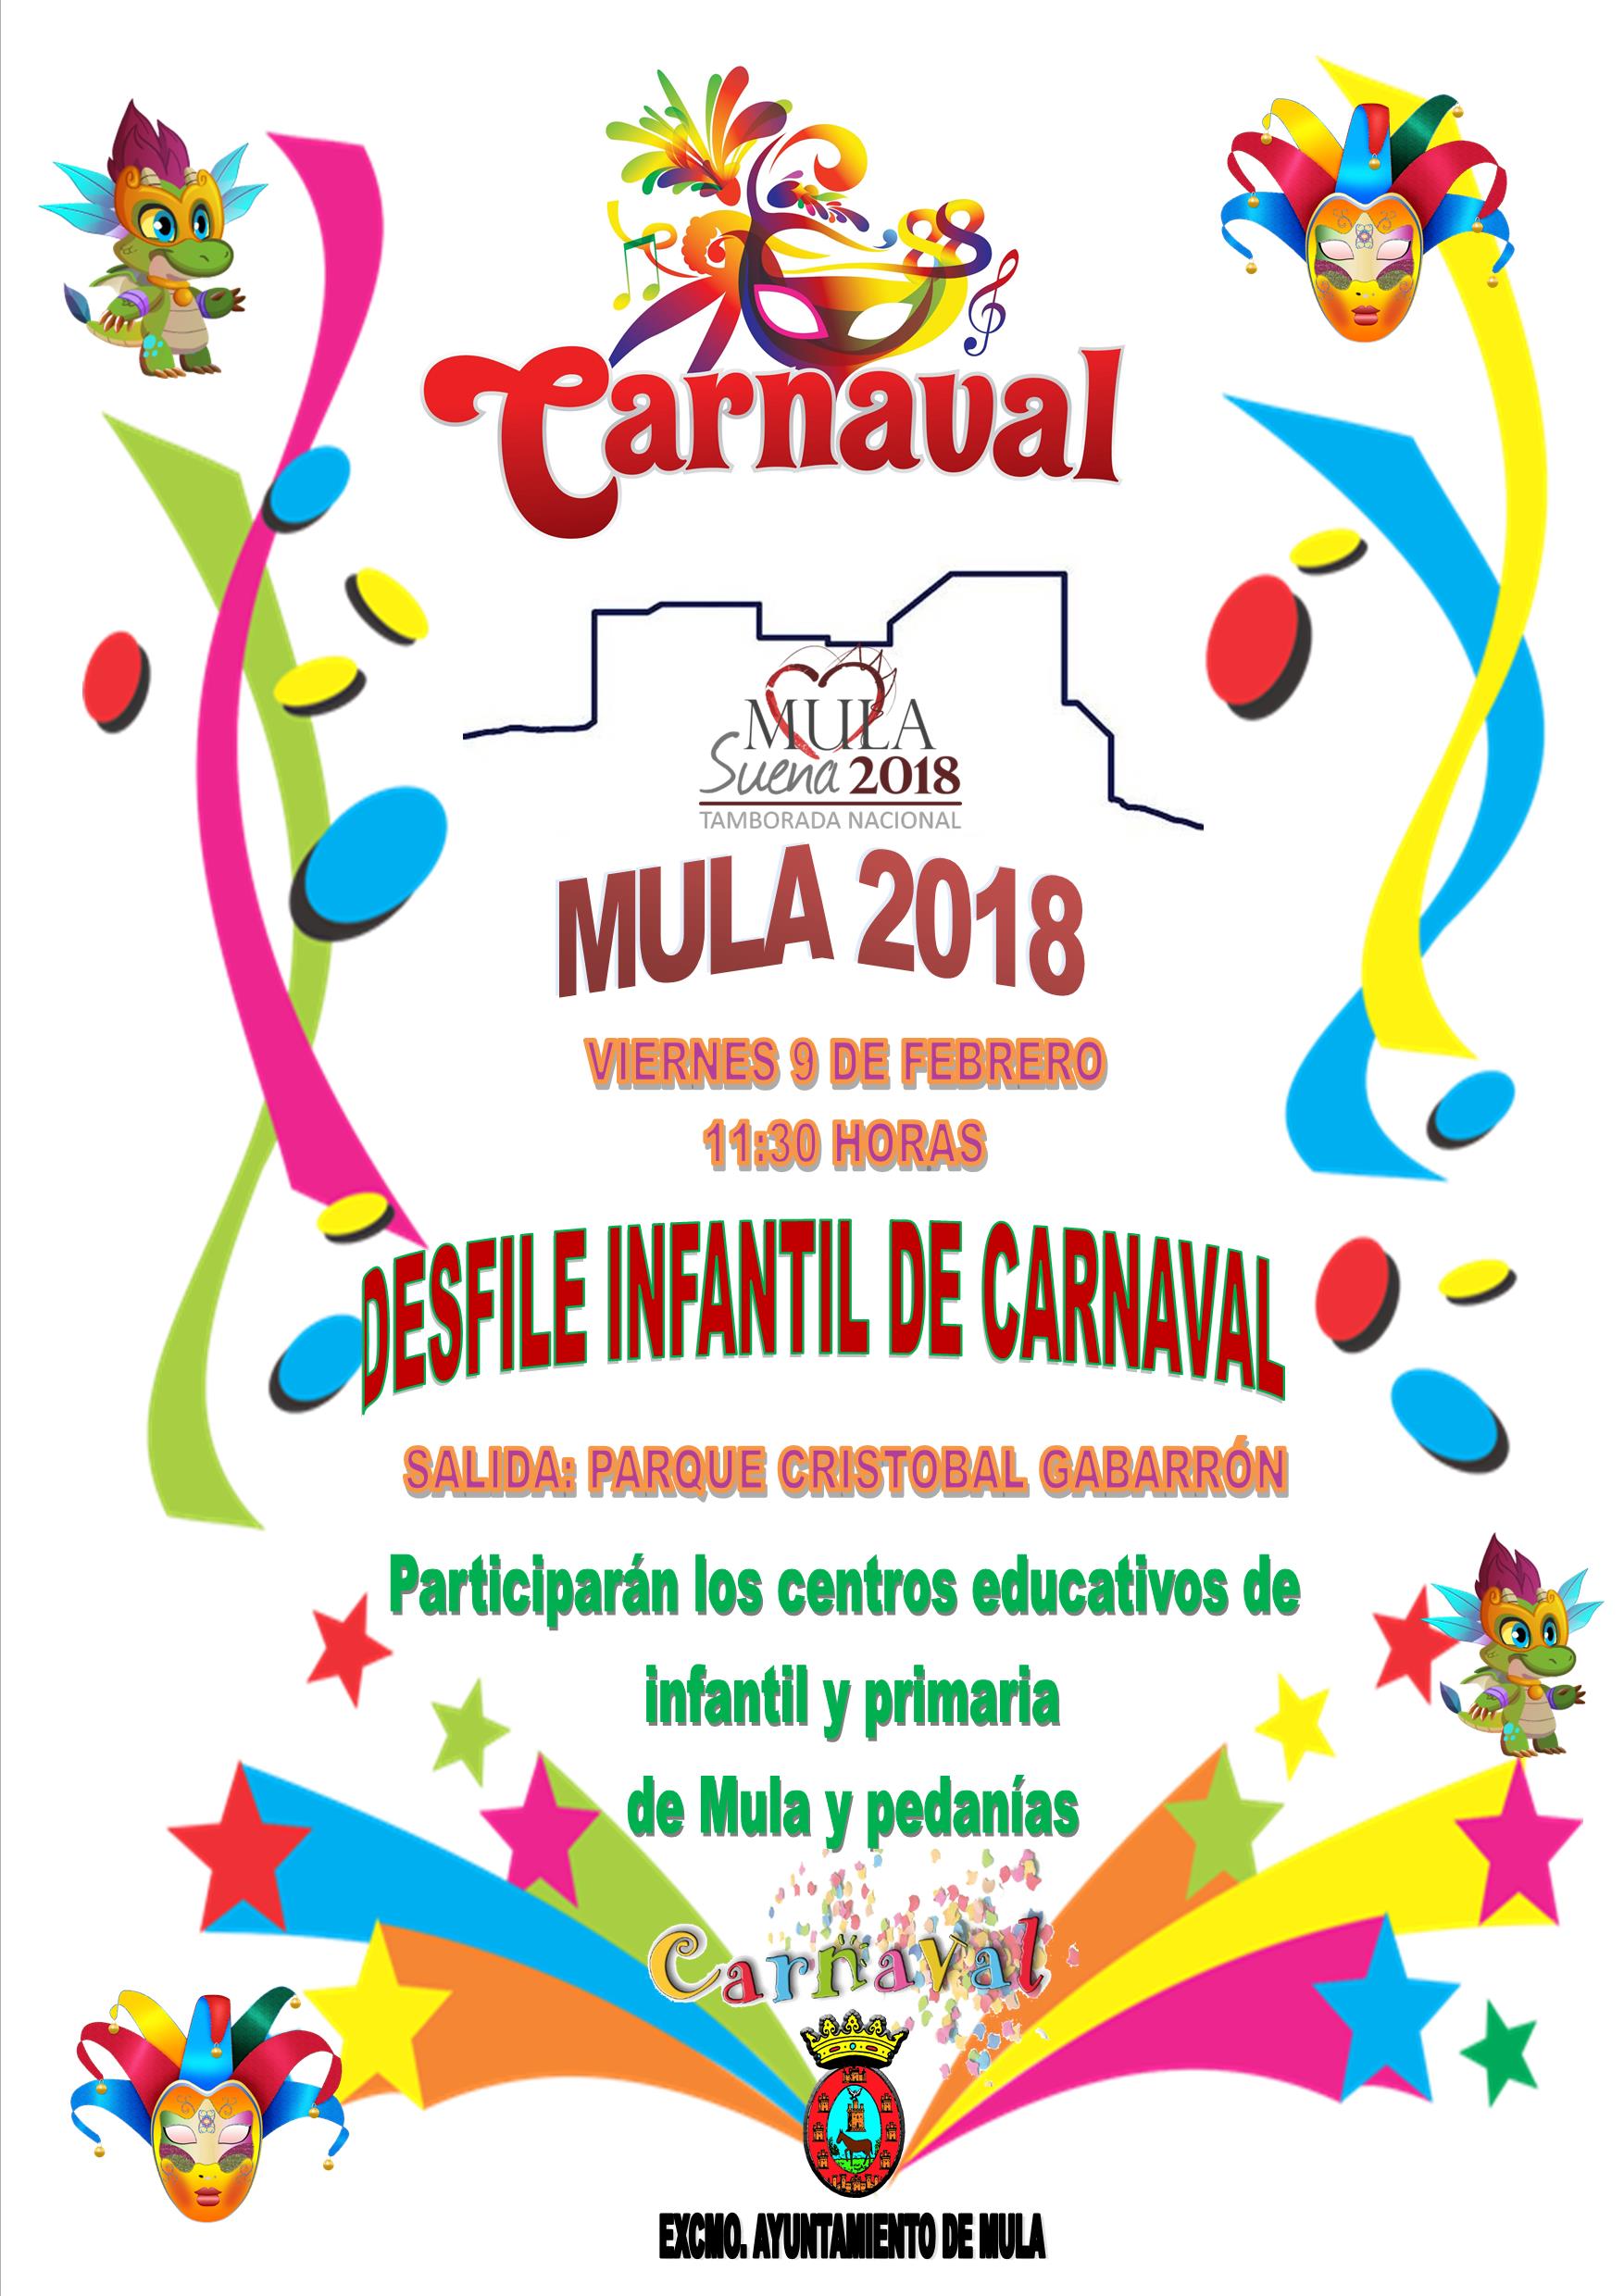 Desfile infantil de carnaval en Mula